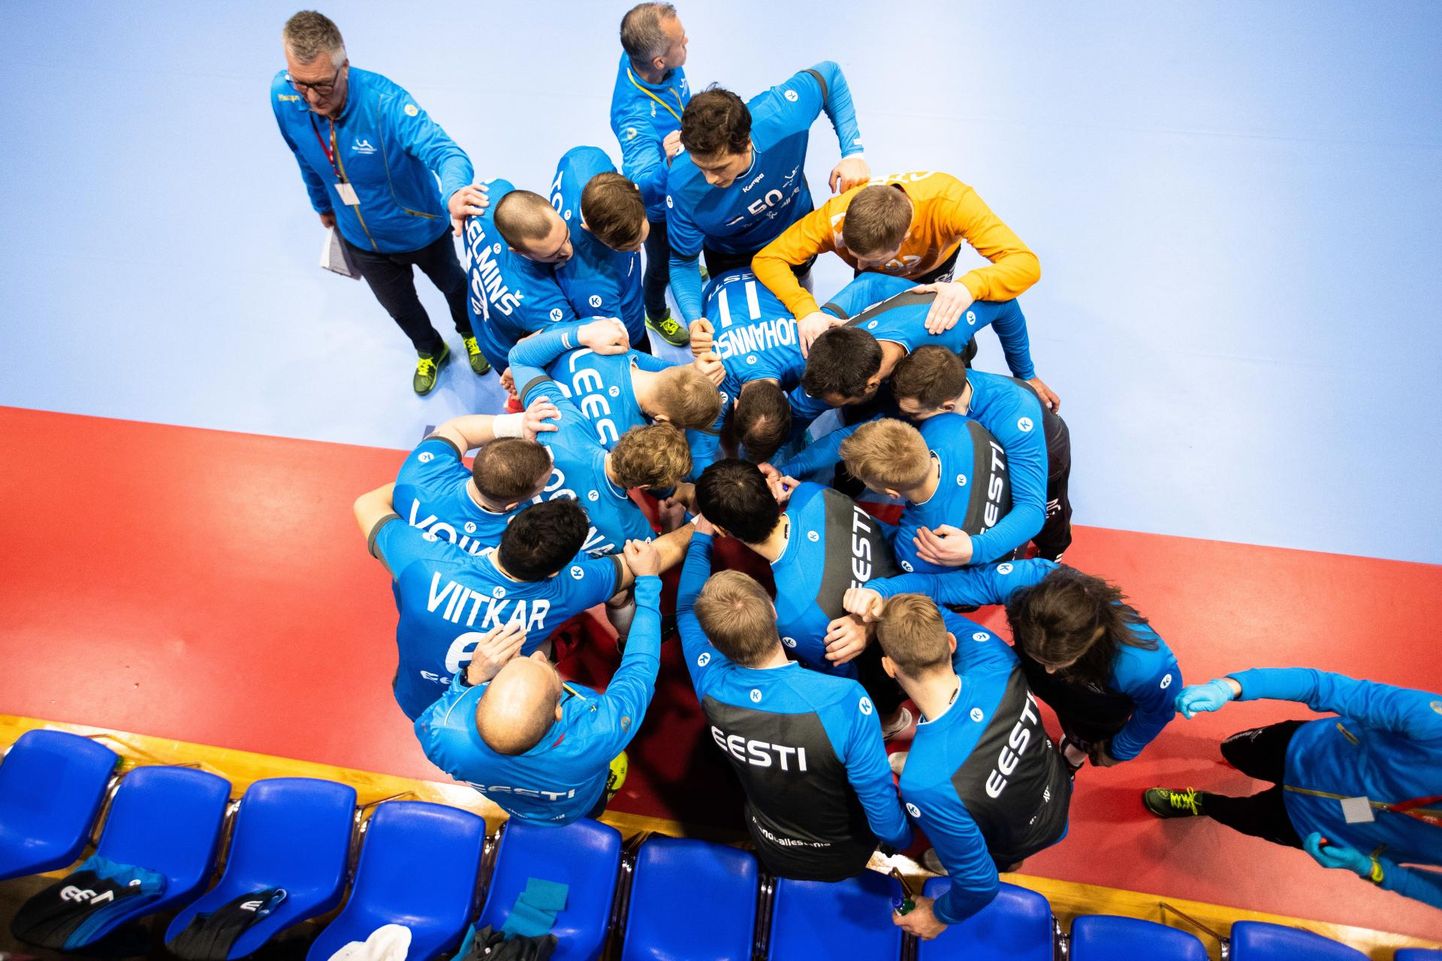 Eesti käsipallikoondis valmistub Euroopa meistrivõistluste valikturniiri otsustavateks mängudeks: neljapäeval võõrustab ta Austriat ja pühapäeval sõidab kohtuma Saksamaaga.